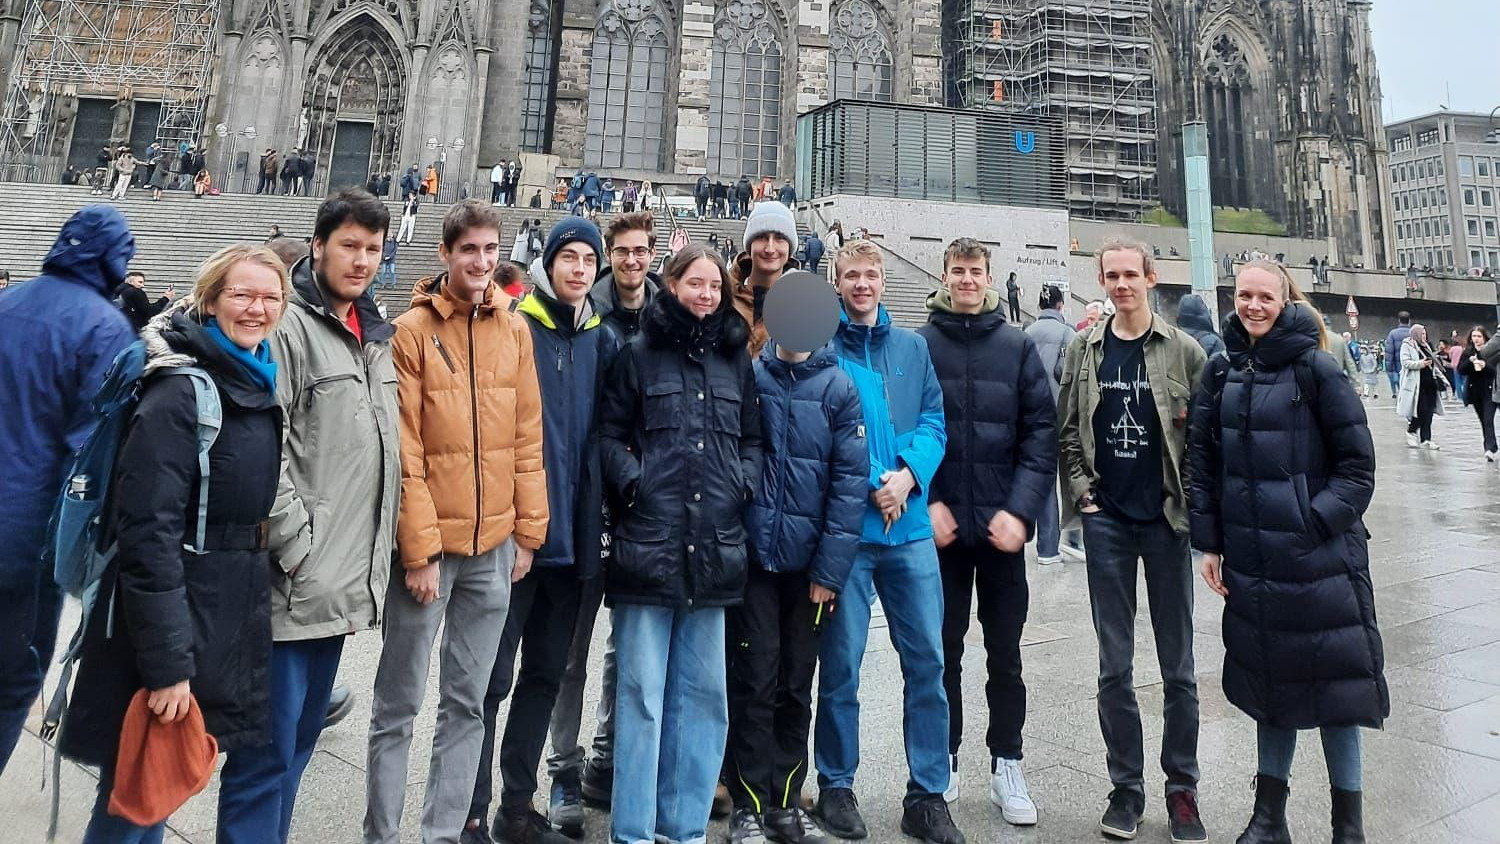 Gruppenfoto vor dem Kölner Dom.